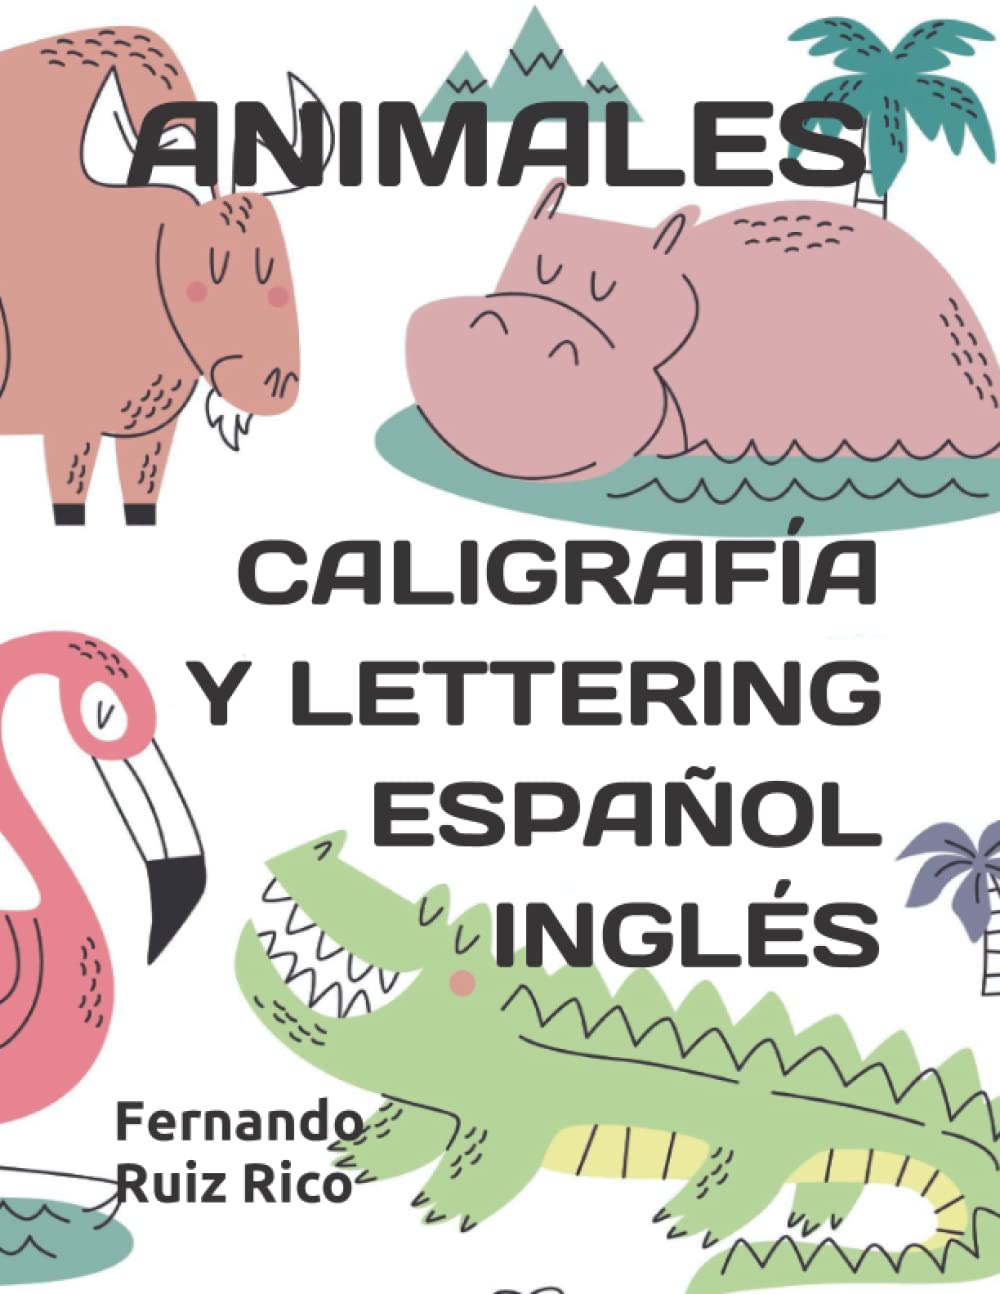 Animales: Caligrafía y lettering español inglés